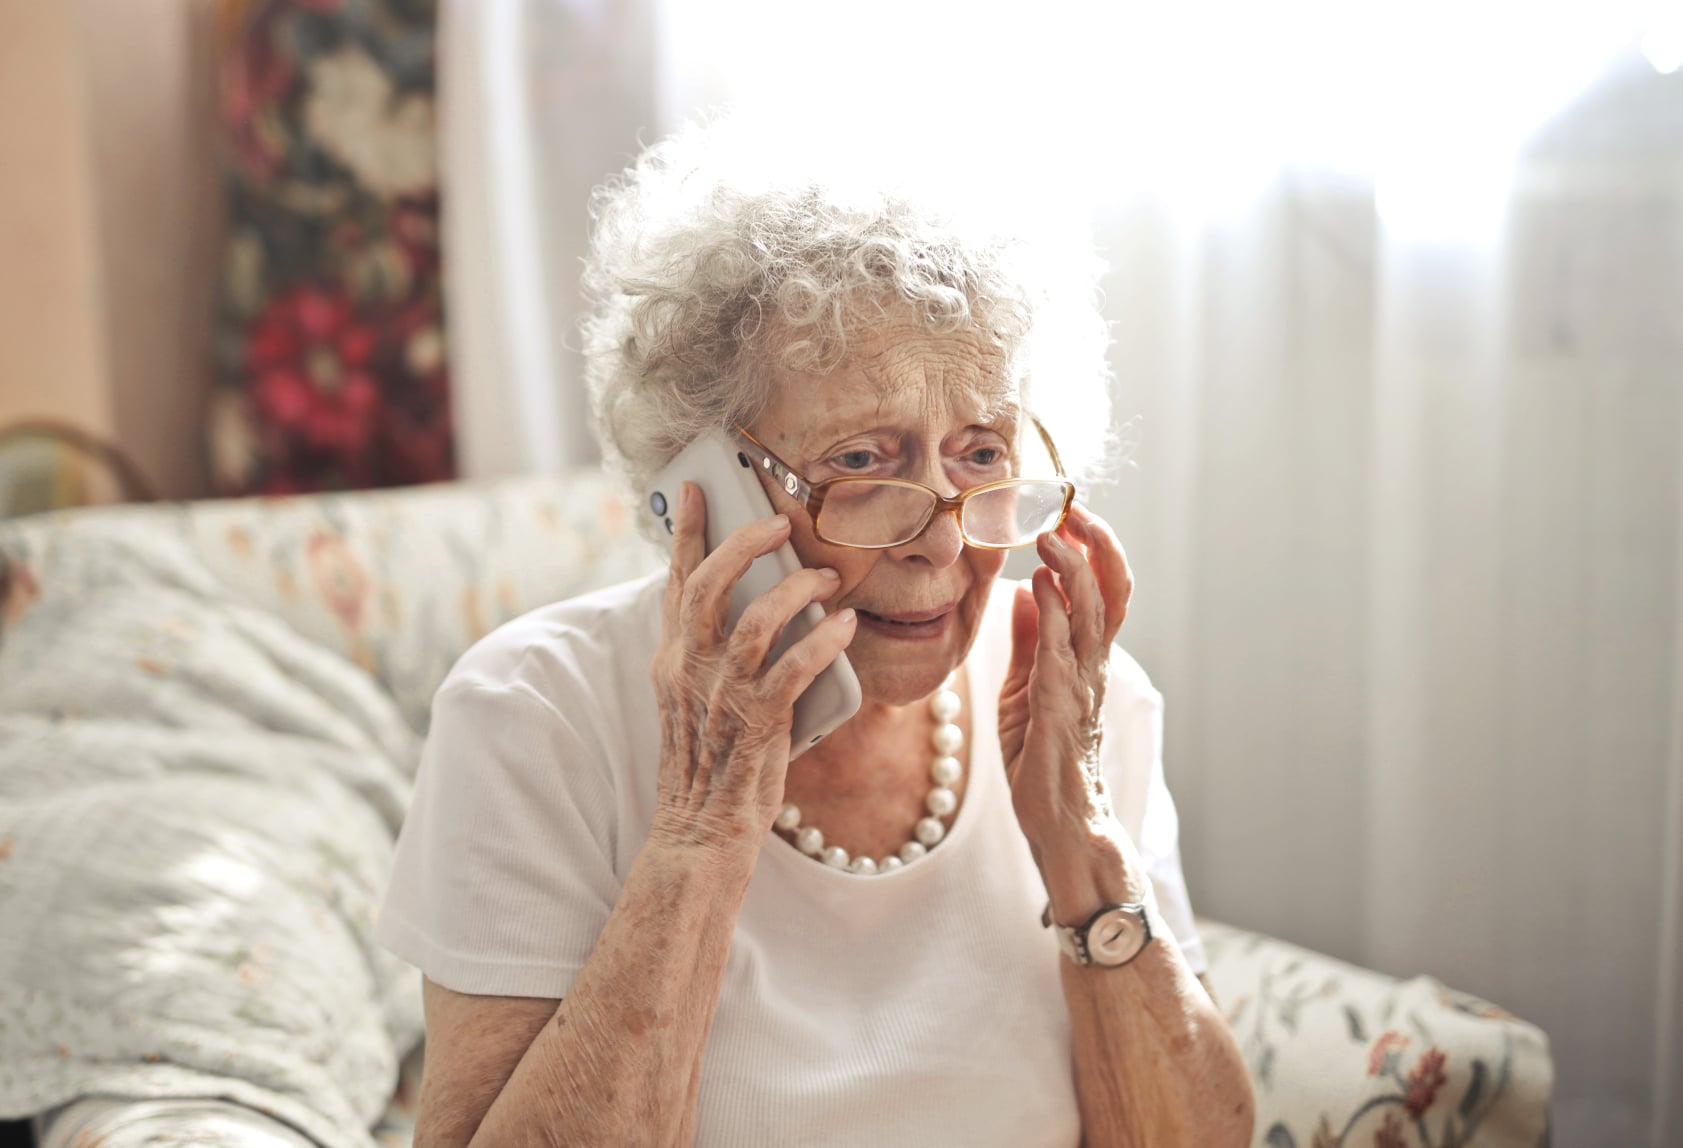 vypocujte-si-autenticky-telefonat-na-158.-takto-ma-vyzerat-spravna-reakcia-seniorov